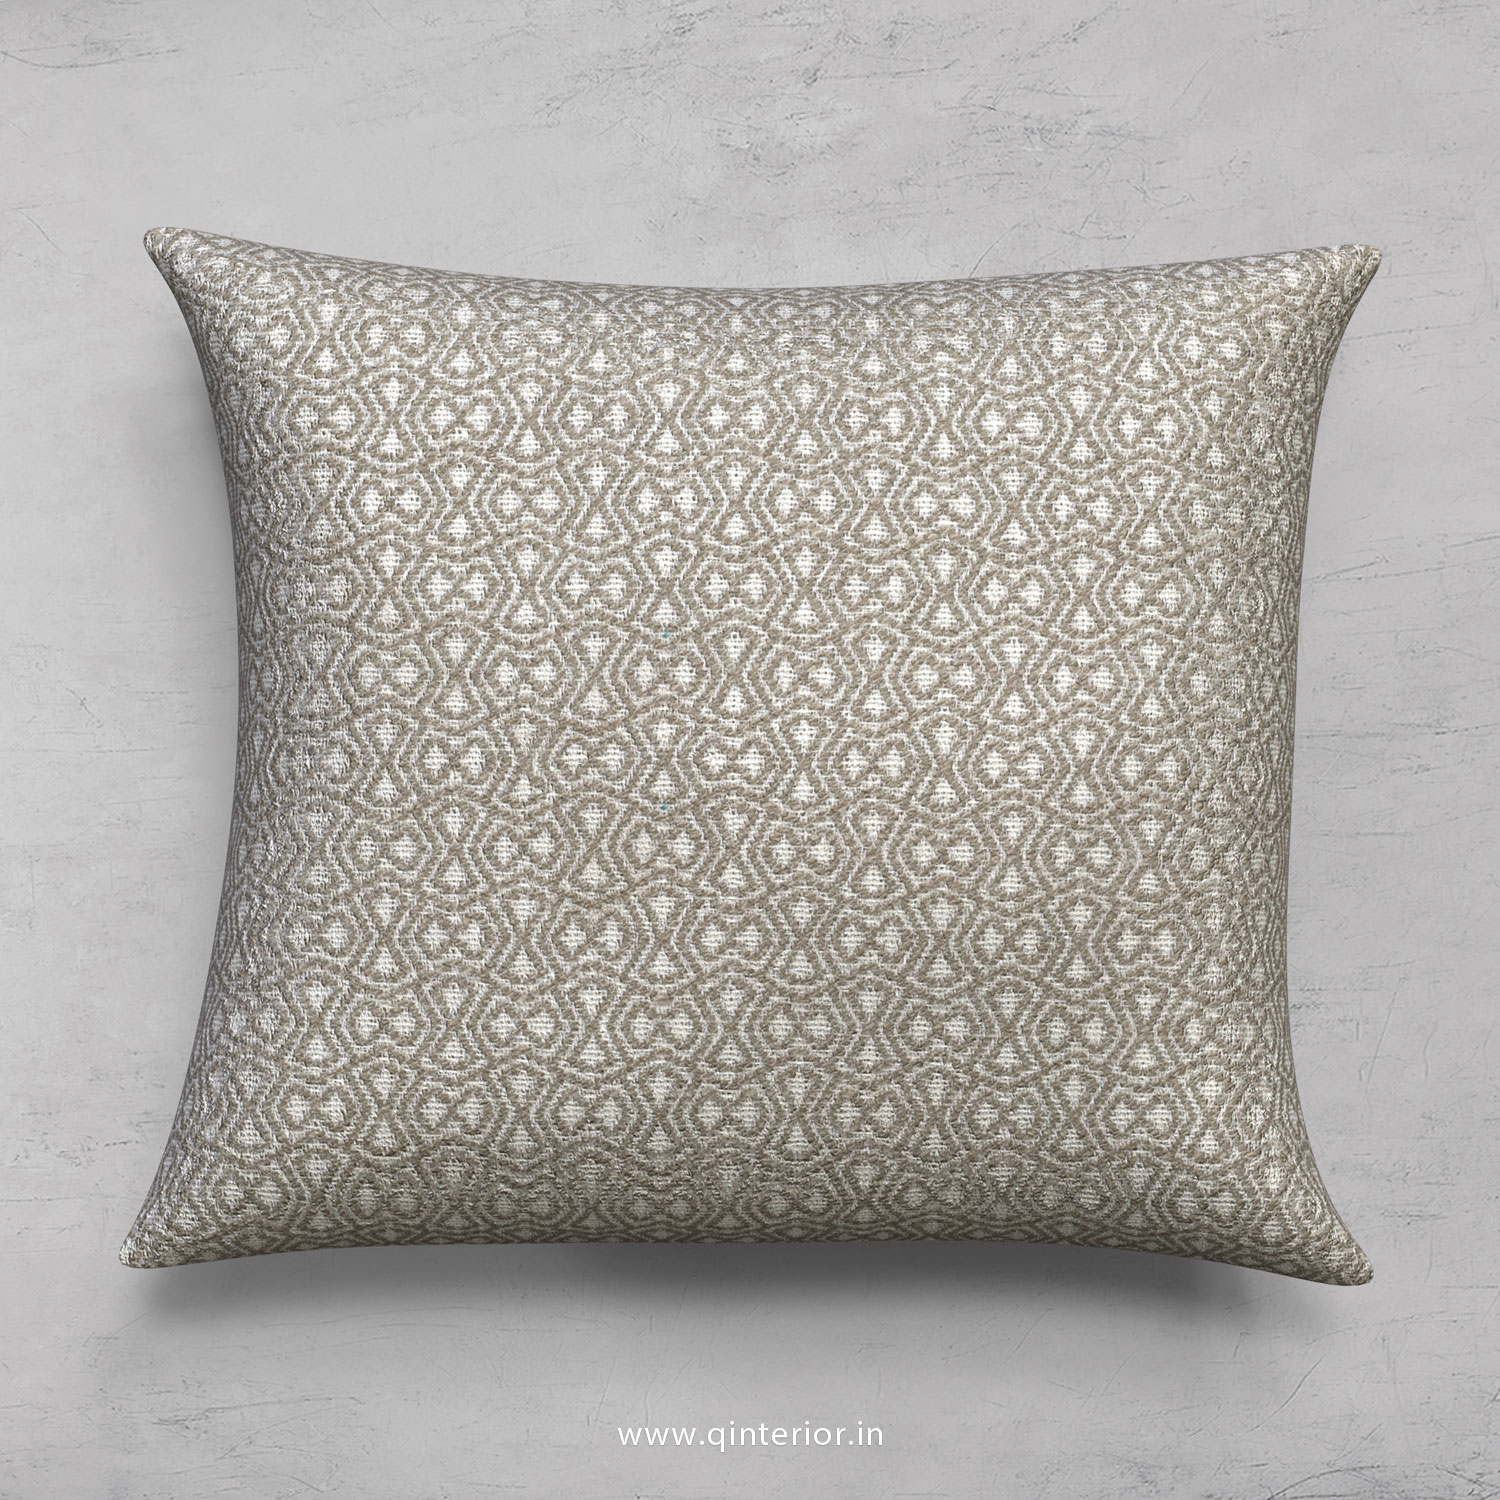 Cushion With Cushion Cover in Jacquard - CUS001 JQ37